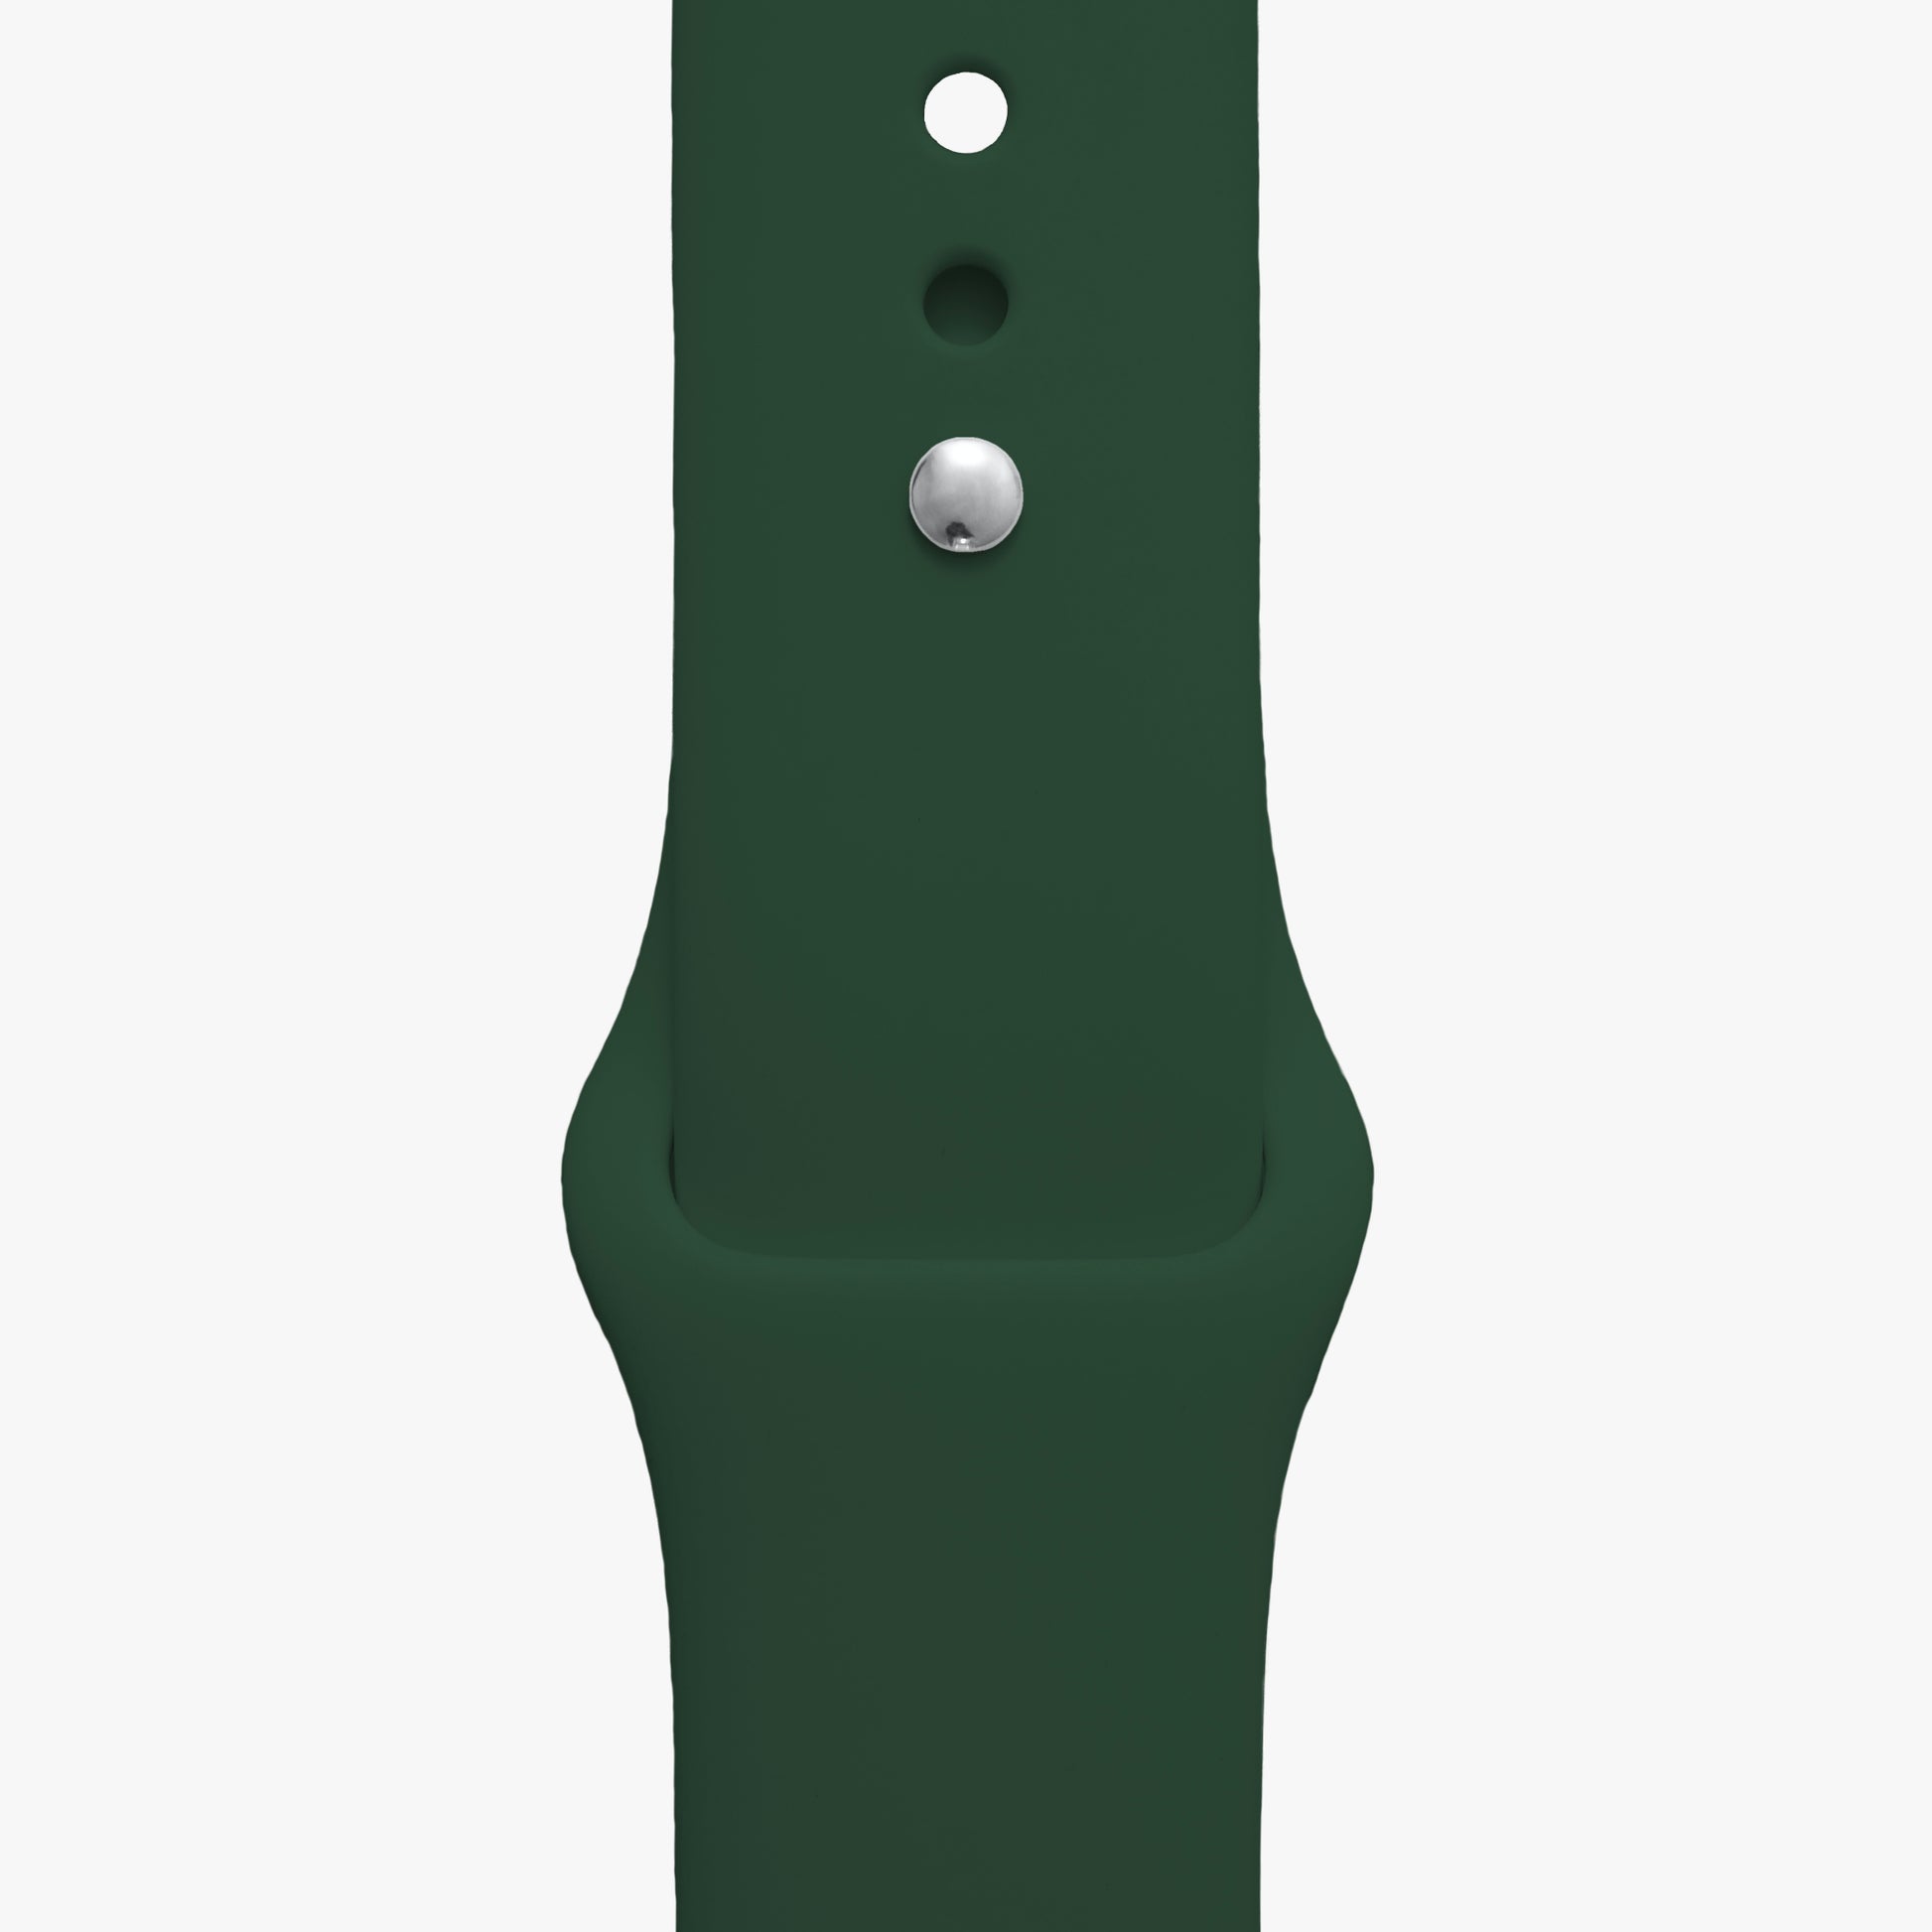 Sportarmband für Apple Watch in dunkelgrün - 2 Größen in Länge S/M + M/L